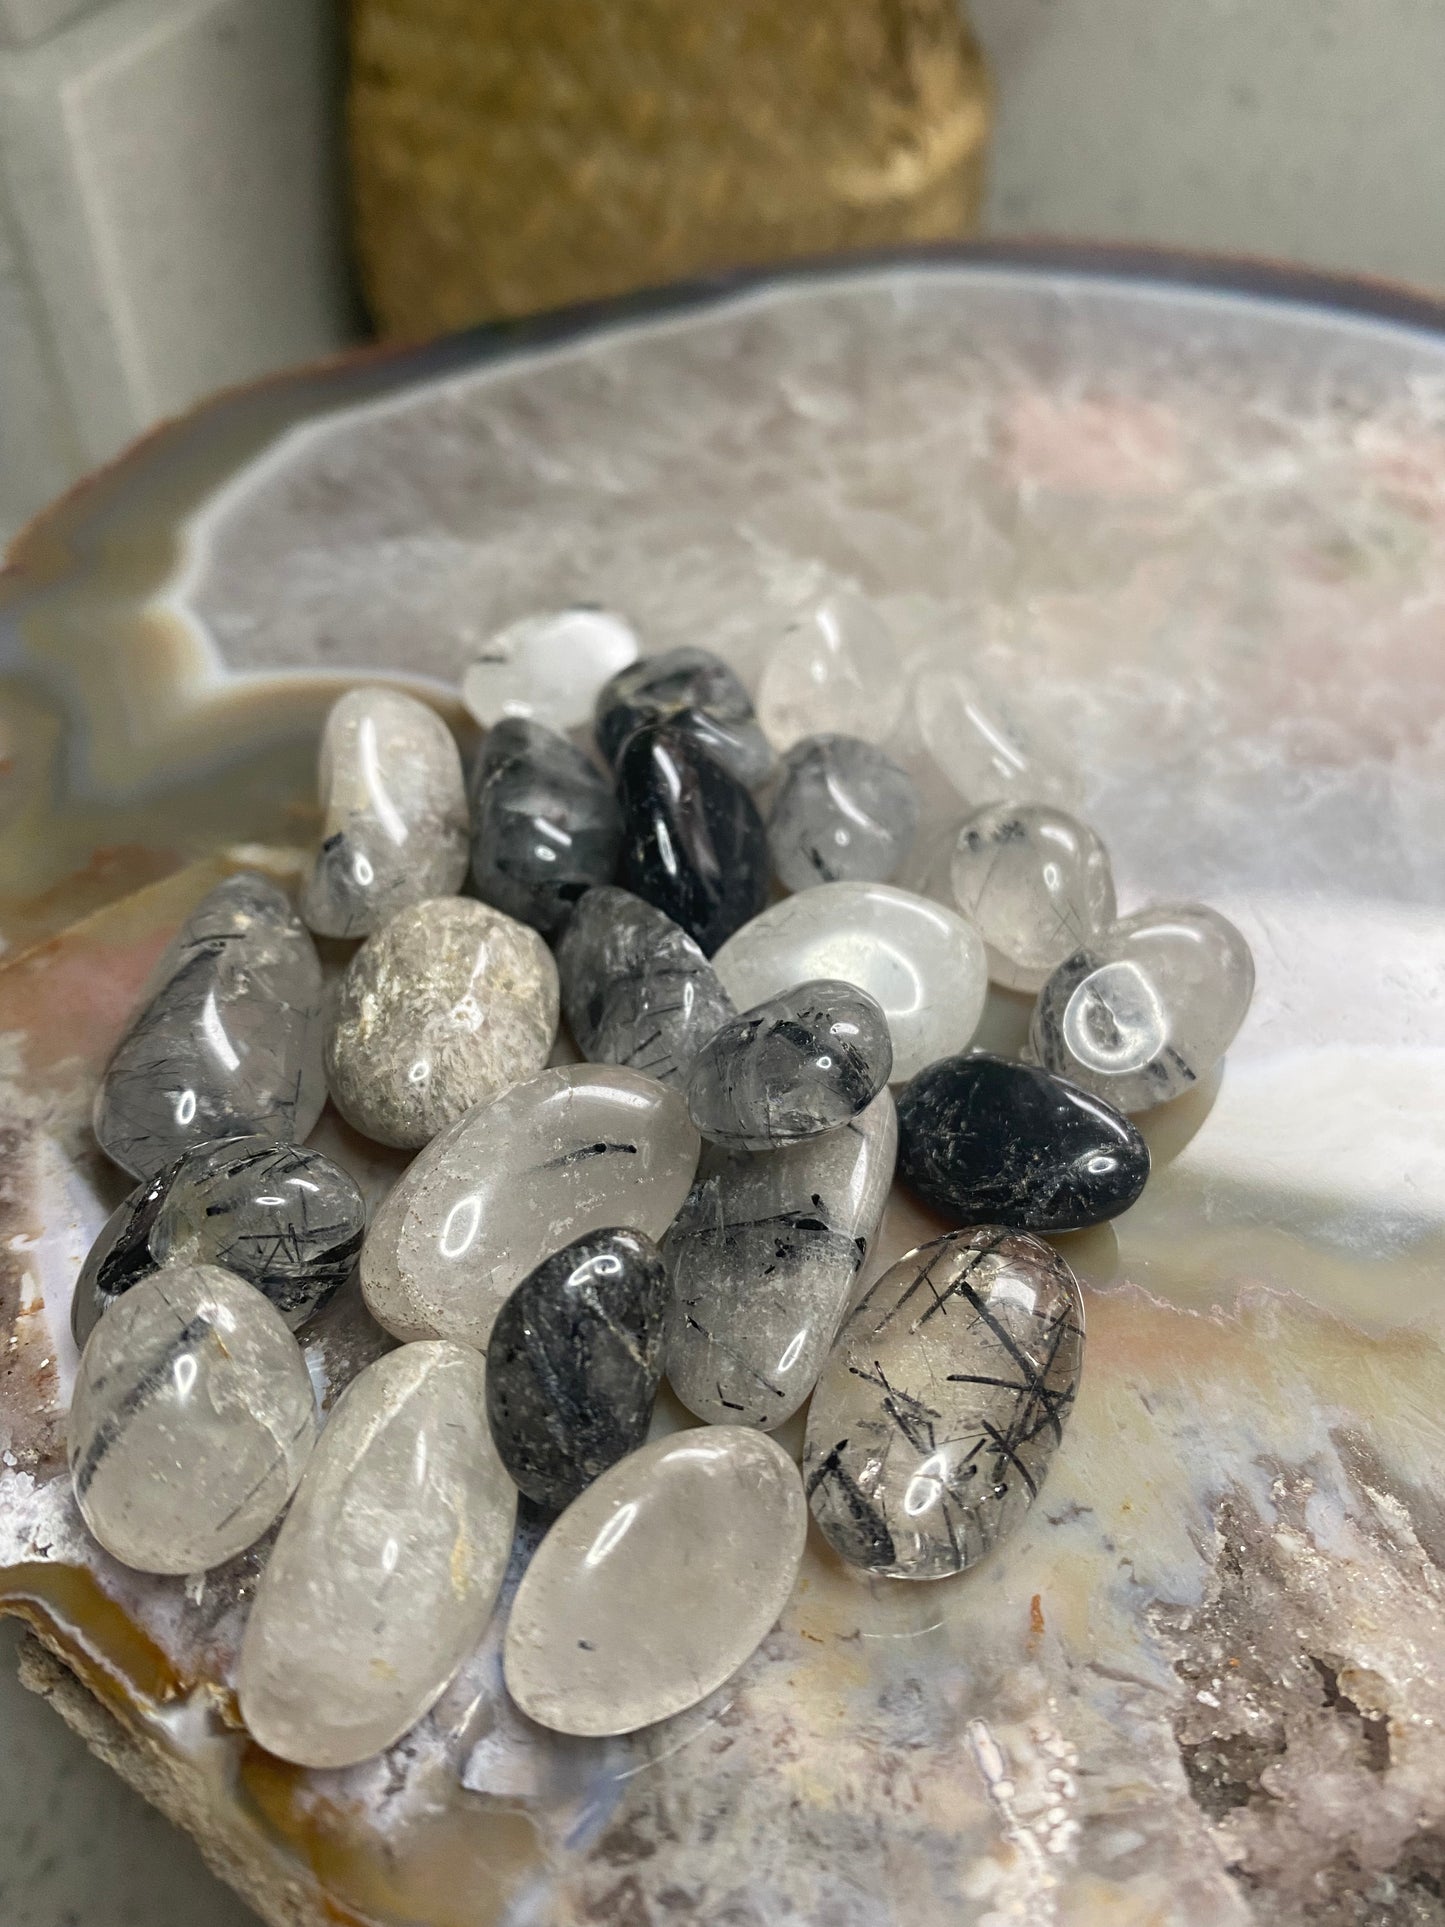 Black tourmaline in quartz